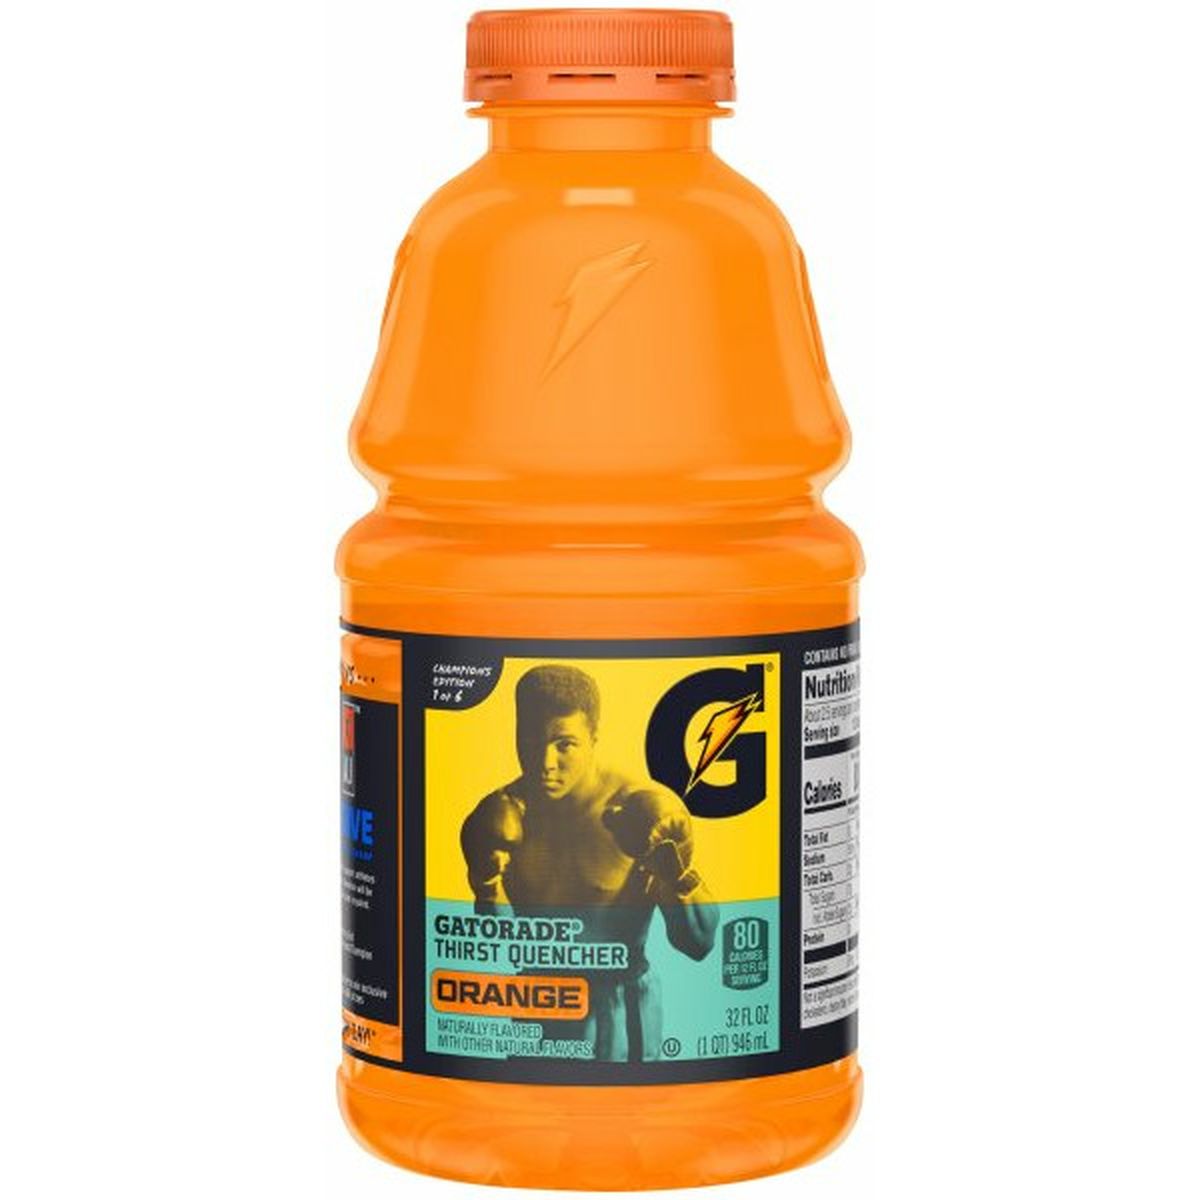 Calories in Gatorade Thirst Quencher, Orange Flavored